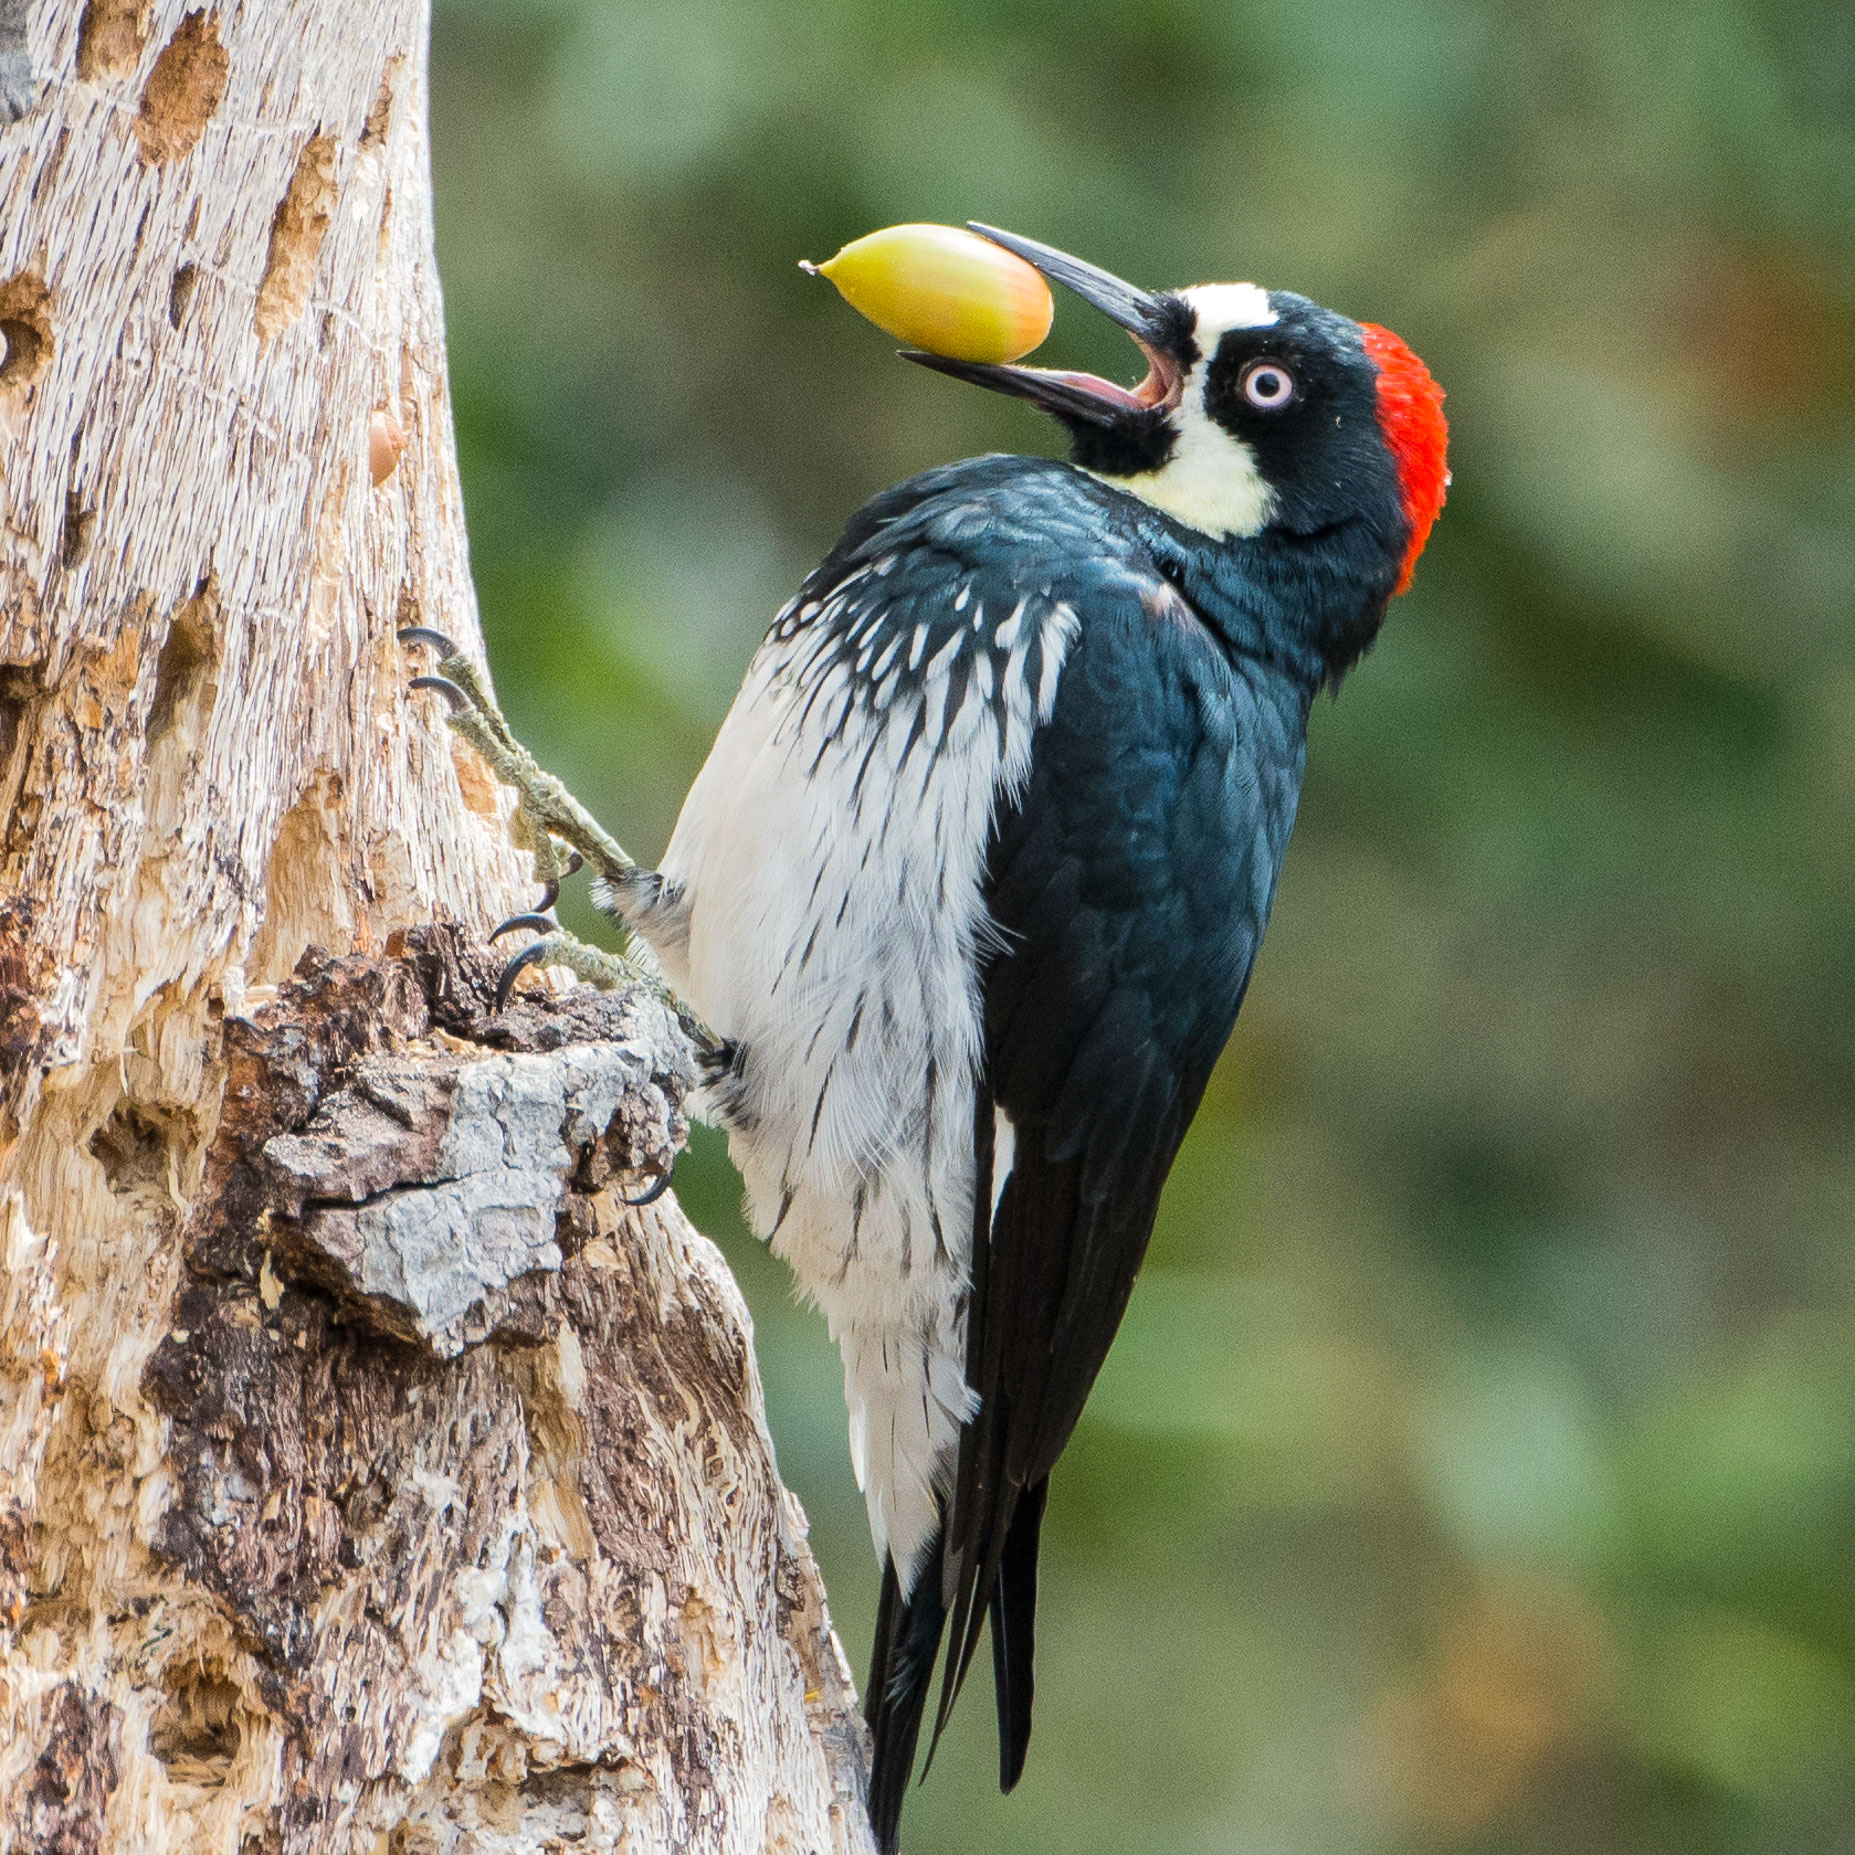 Acorn Woodpecker Territory Fight — Aggressive Birds